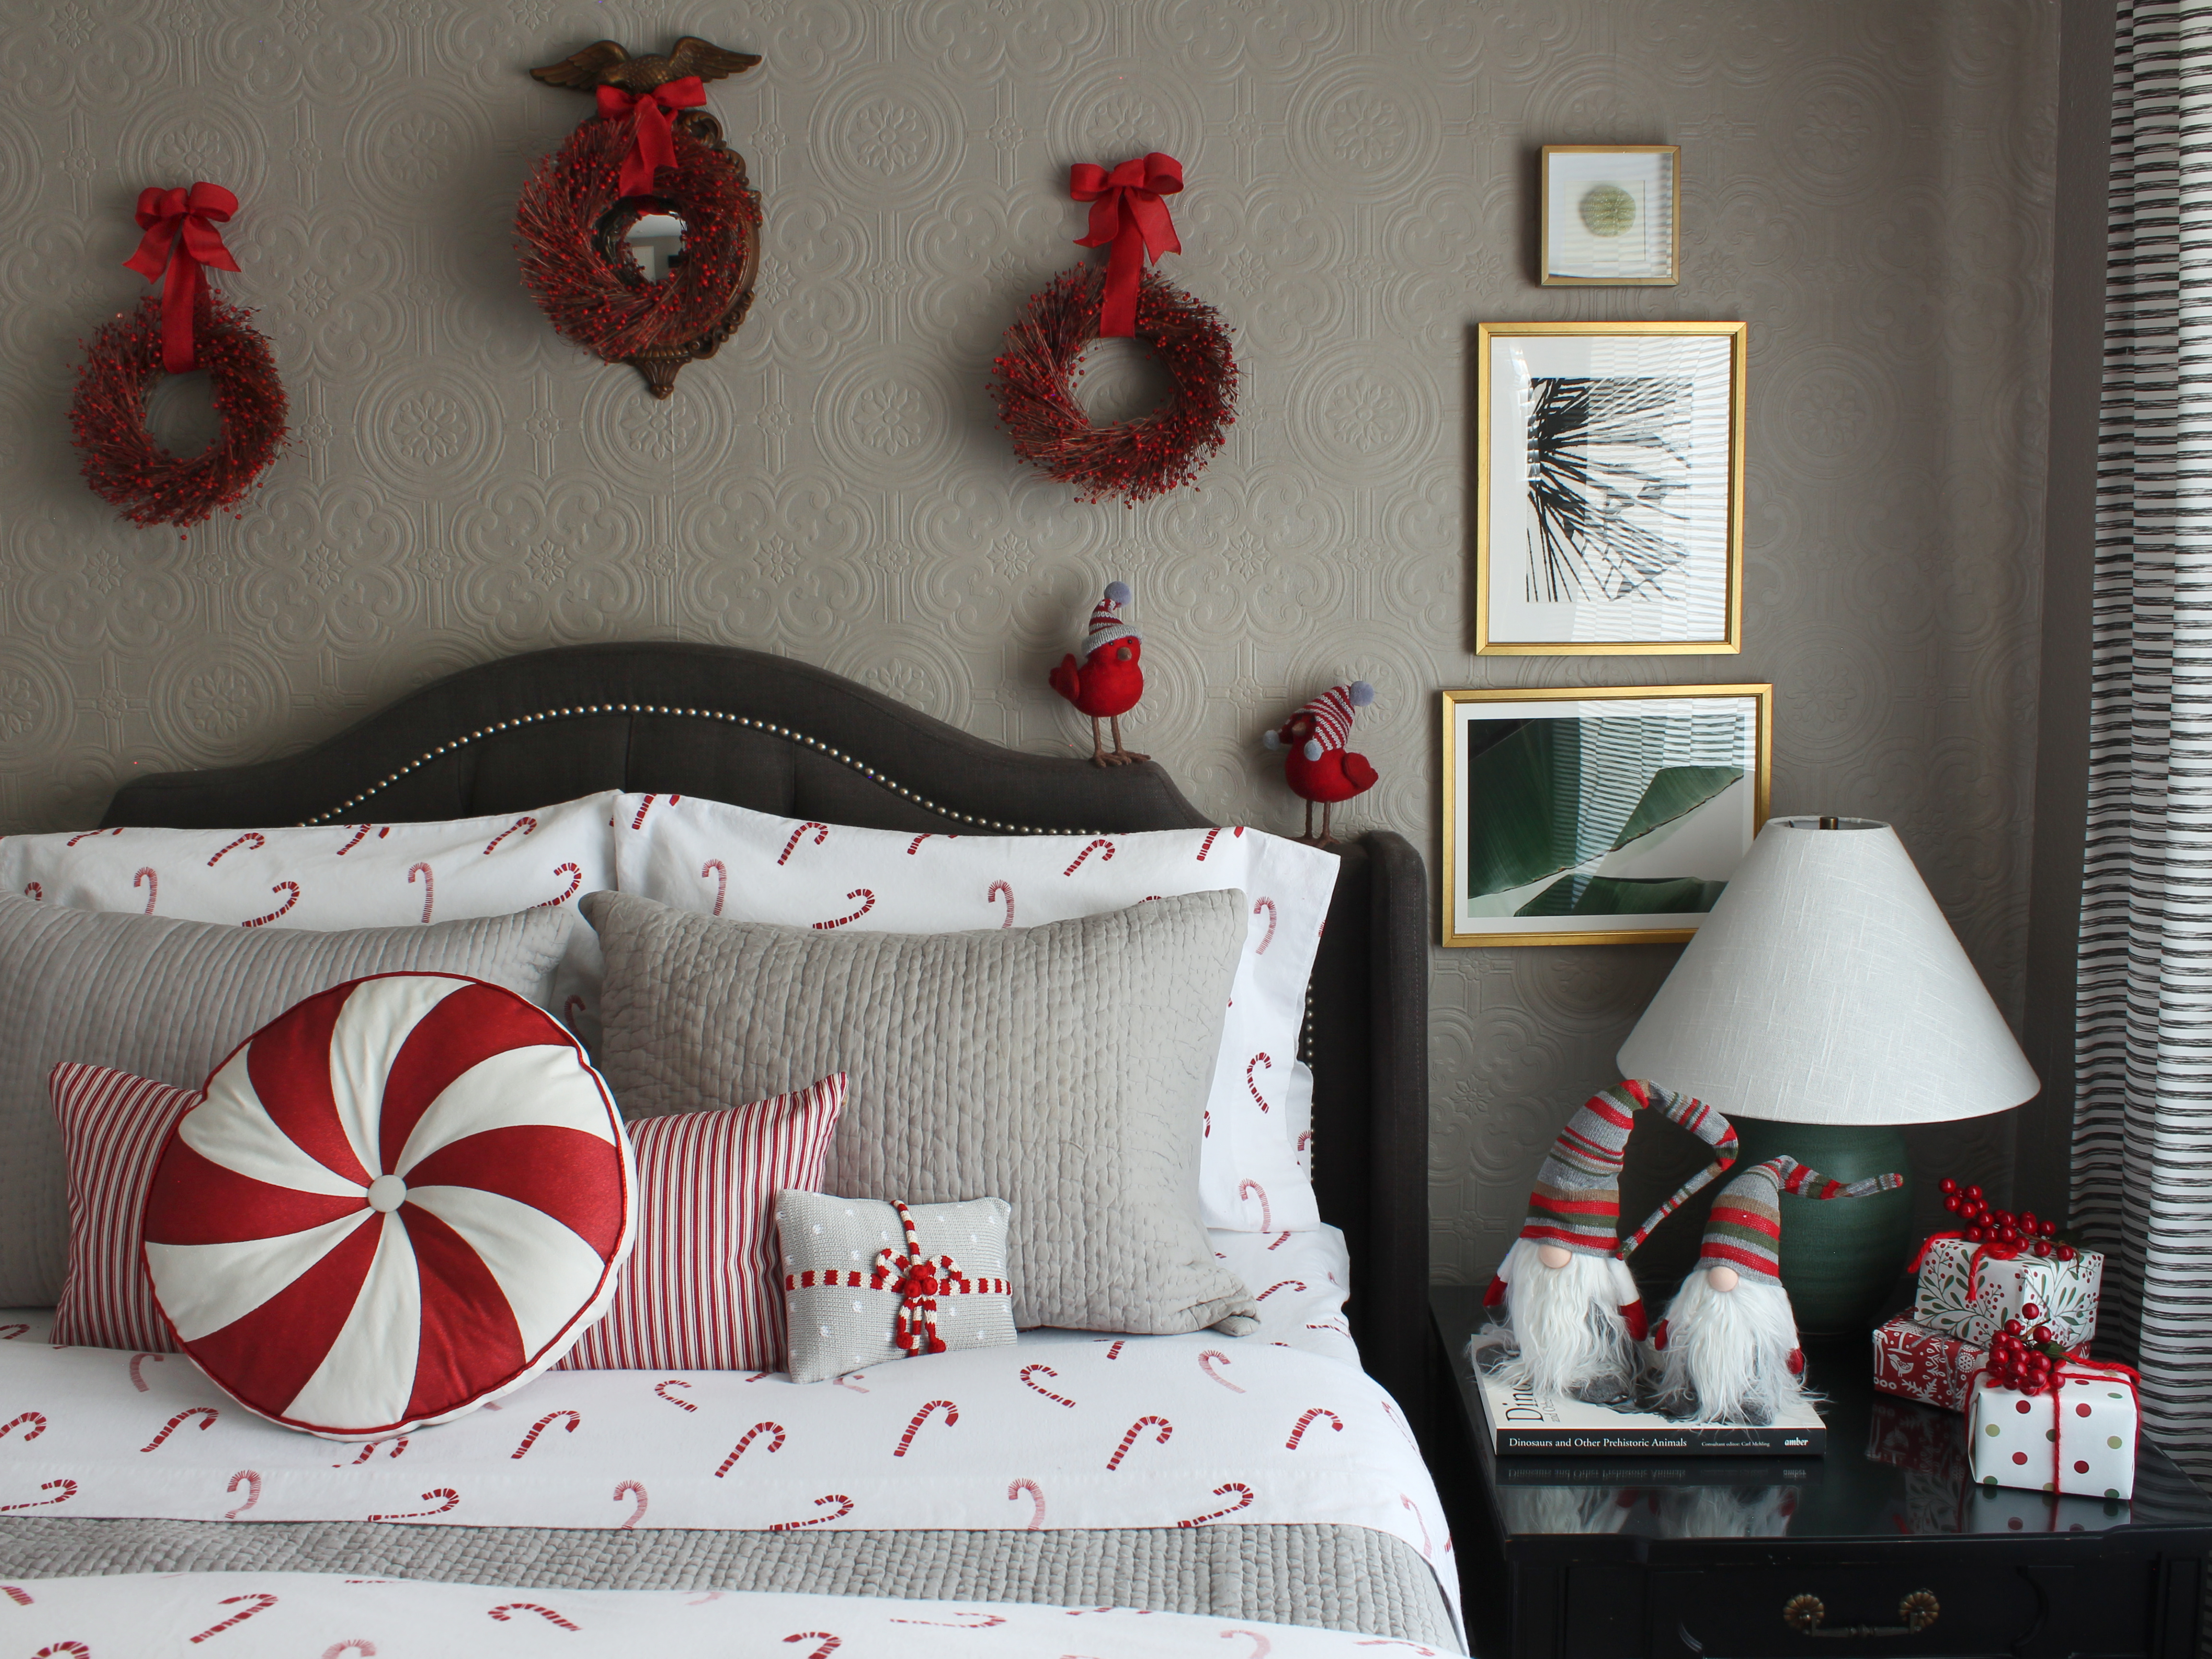 pillows - bed pillows - throw pillows - gray tones  Bedroom design, Bedroom  decor, Interior design bedroom